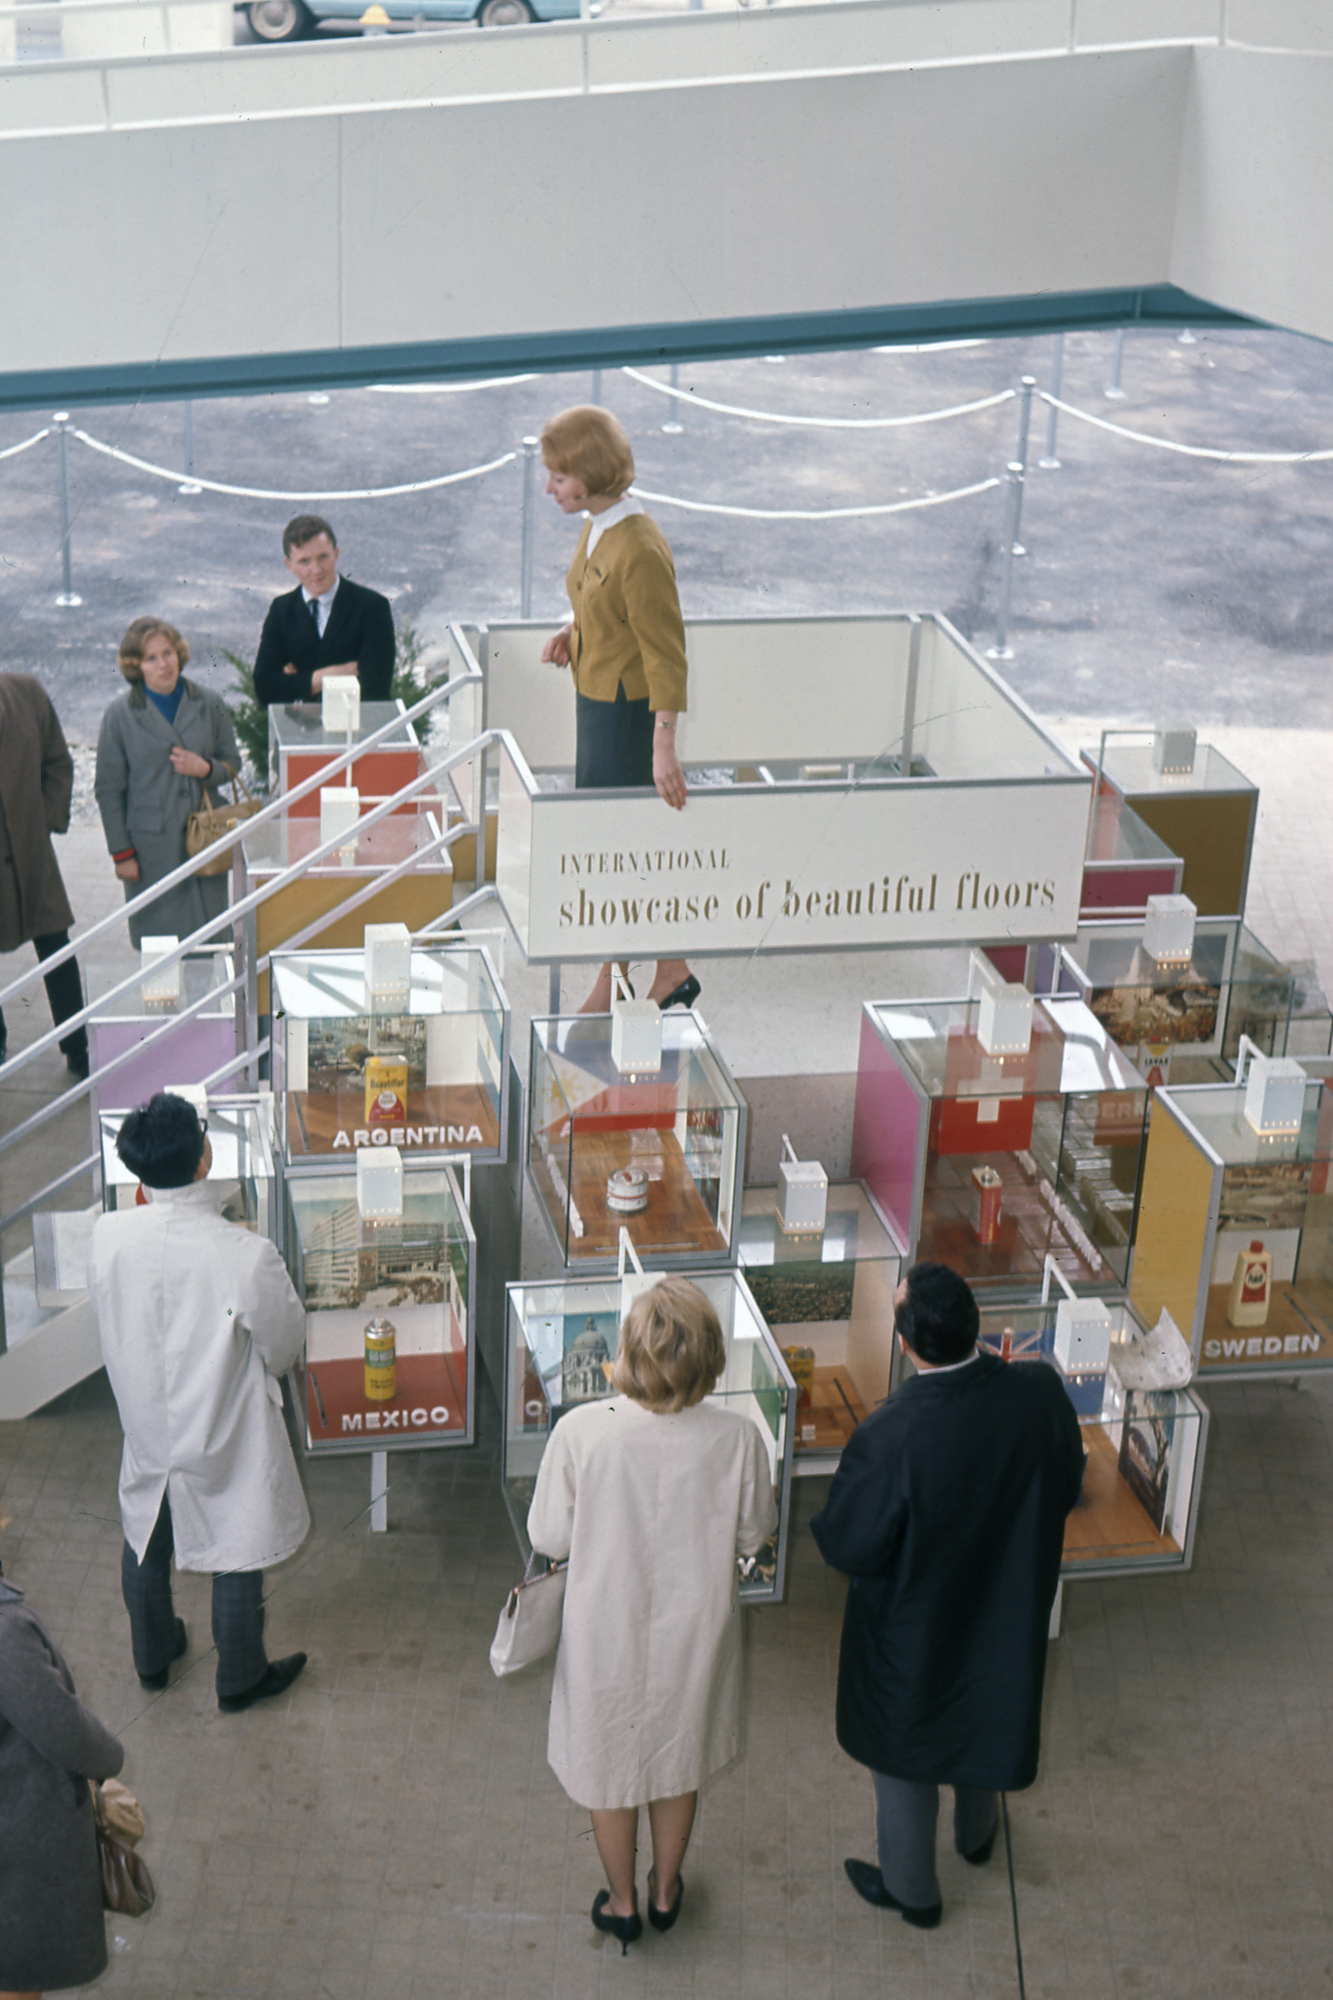 Le stand SC Johnson à la foire mondiale de 1964, faisant la publicité de produits Johnson Wax du monde entier